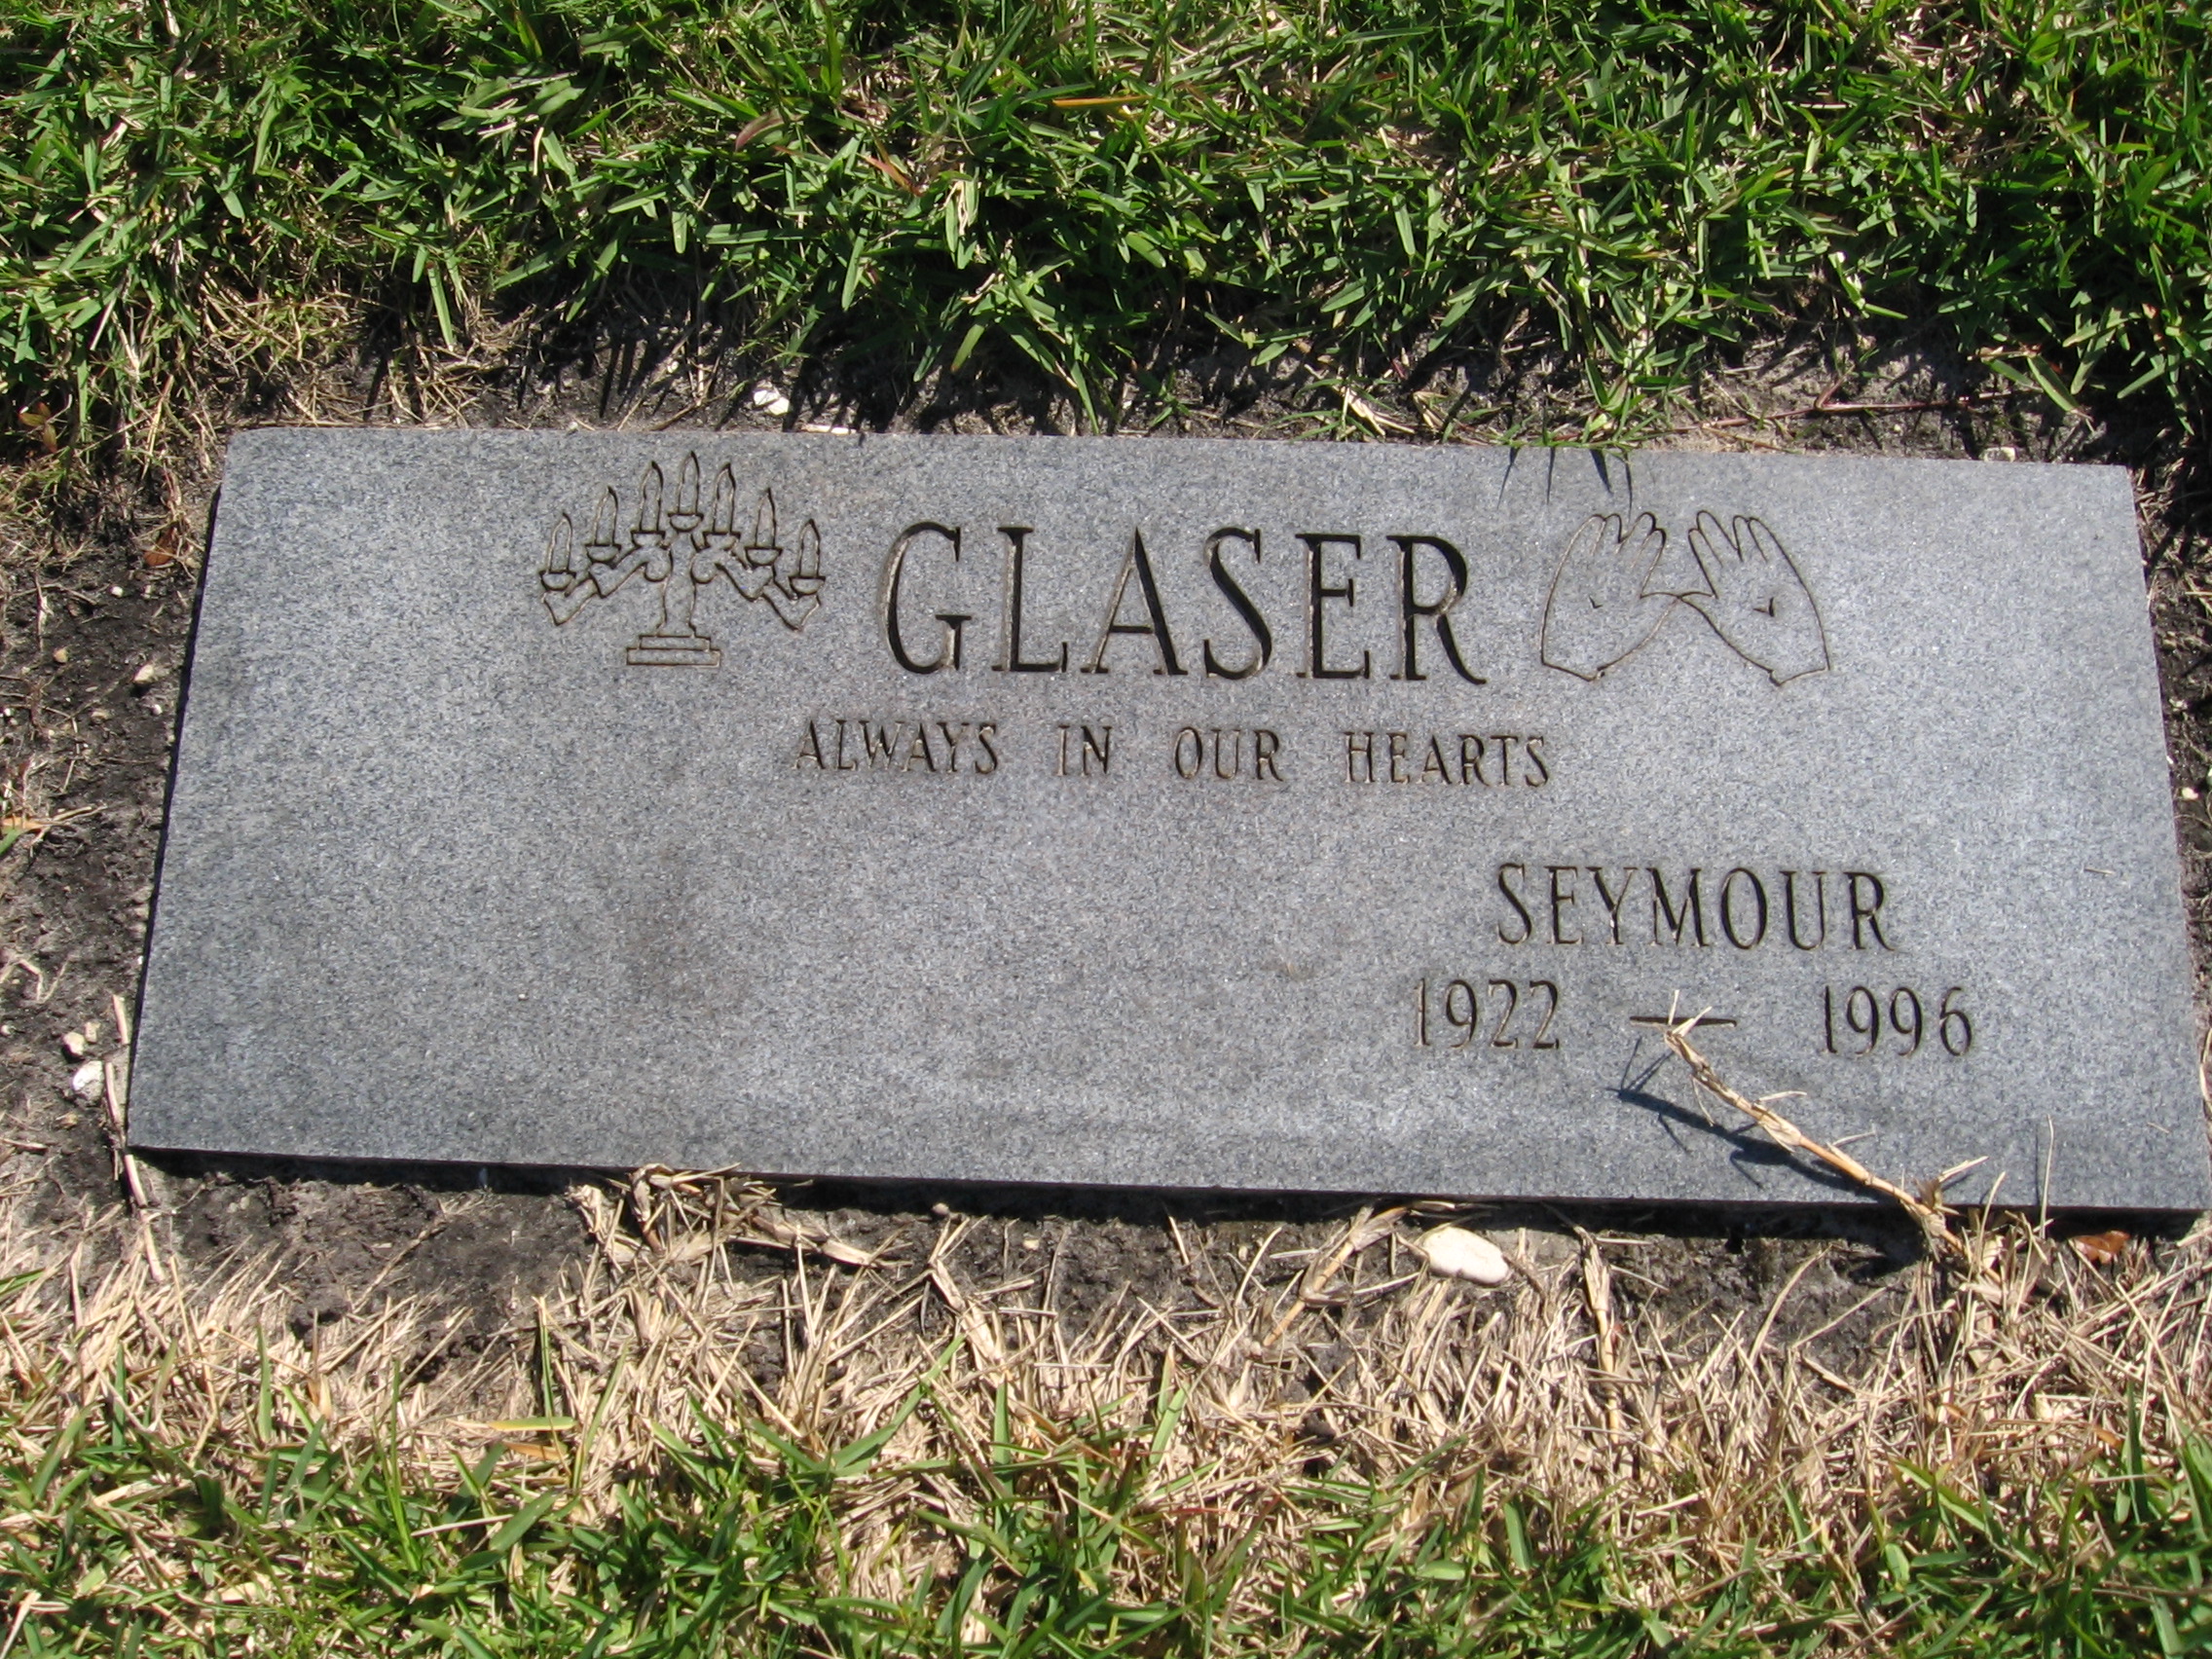 Seymour Glaser